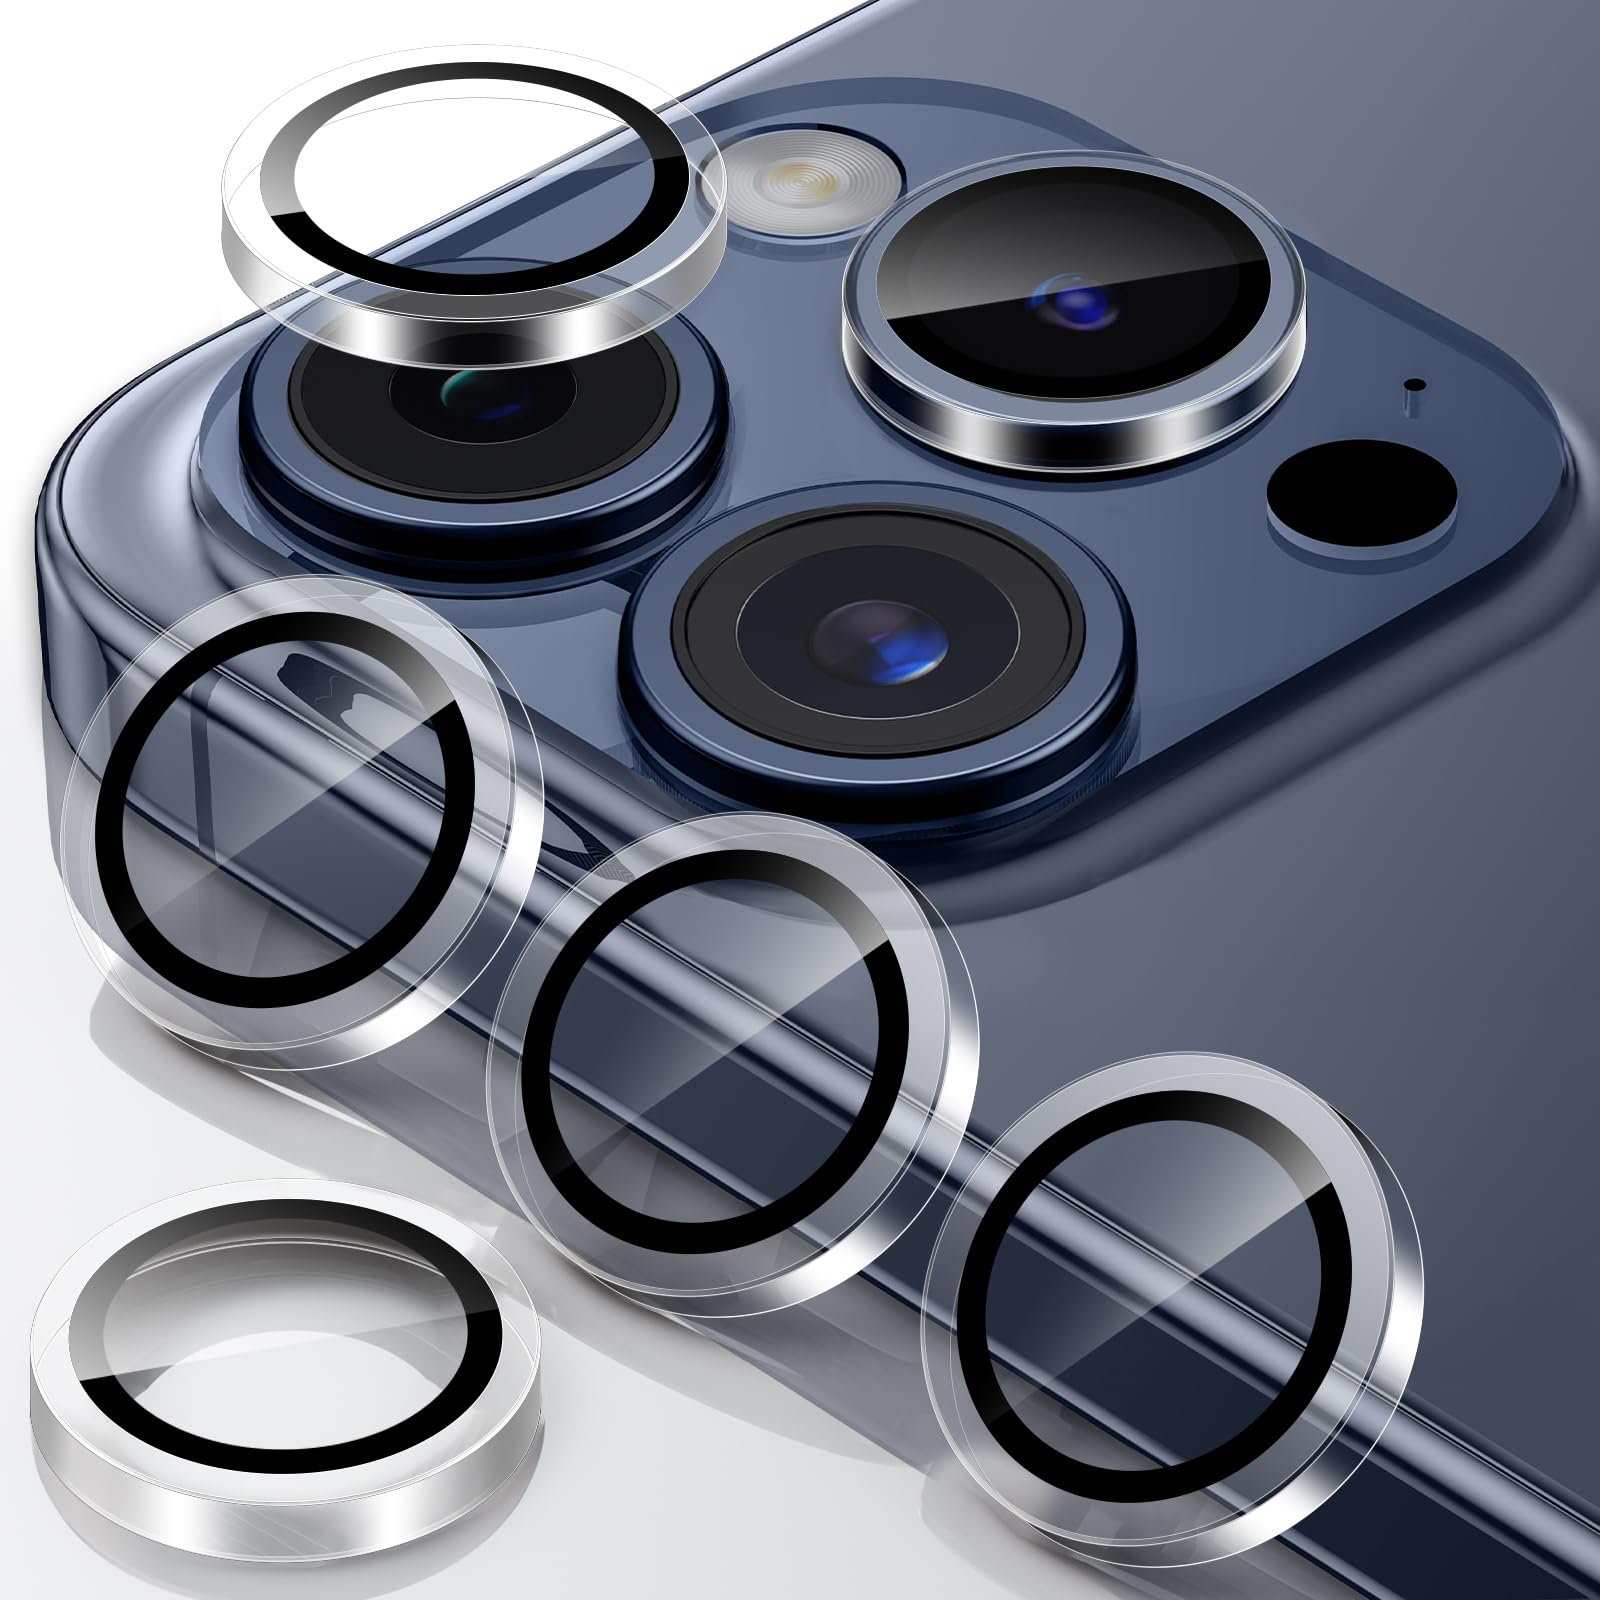 カメラレンズカバー iPhone15 Pro/iPhone15 Pro Maxに適用 カメラ保護 アルミ合金製+強化ガラス アイフォン15Pro/15ProMaxカメラフィルム キズ防止 耐衝撃 露出オーバー防止 超高透過率 あいふぉん15プロ/あいふぉん15プロマックス カメラカバー プラスチッ